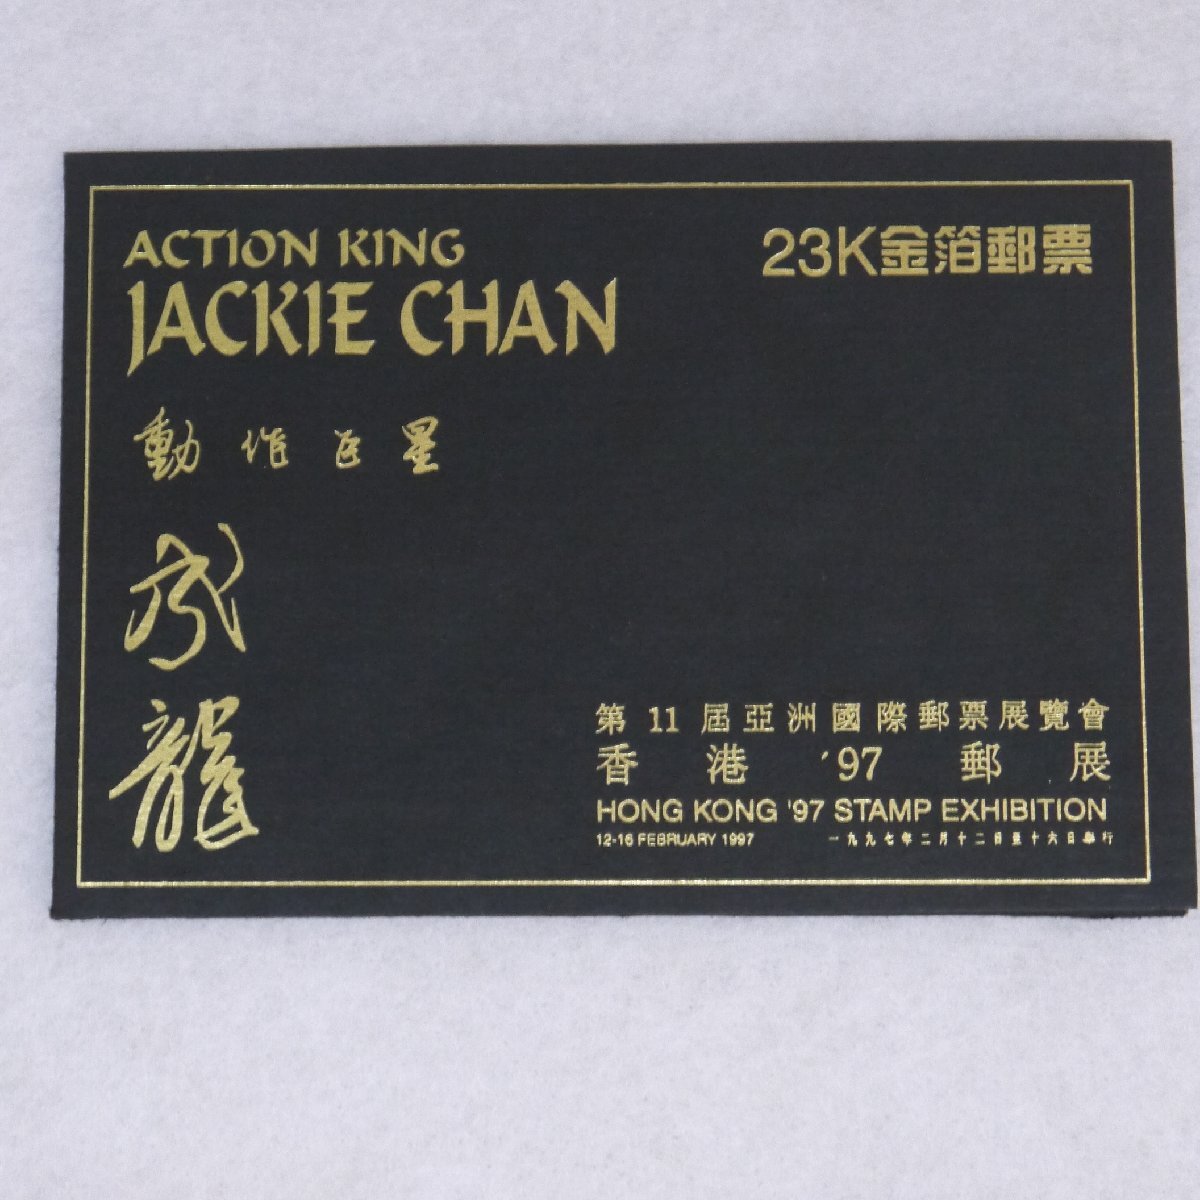 定形外送料無料 現状品・保管品 JACKIE CHAN ジャッキーチェン 香港’97郵展 記念切手 23K金箔郵票など まとめて 現状品の画像6